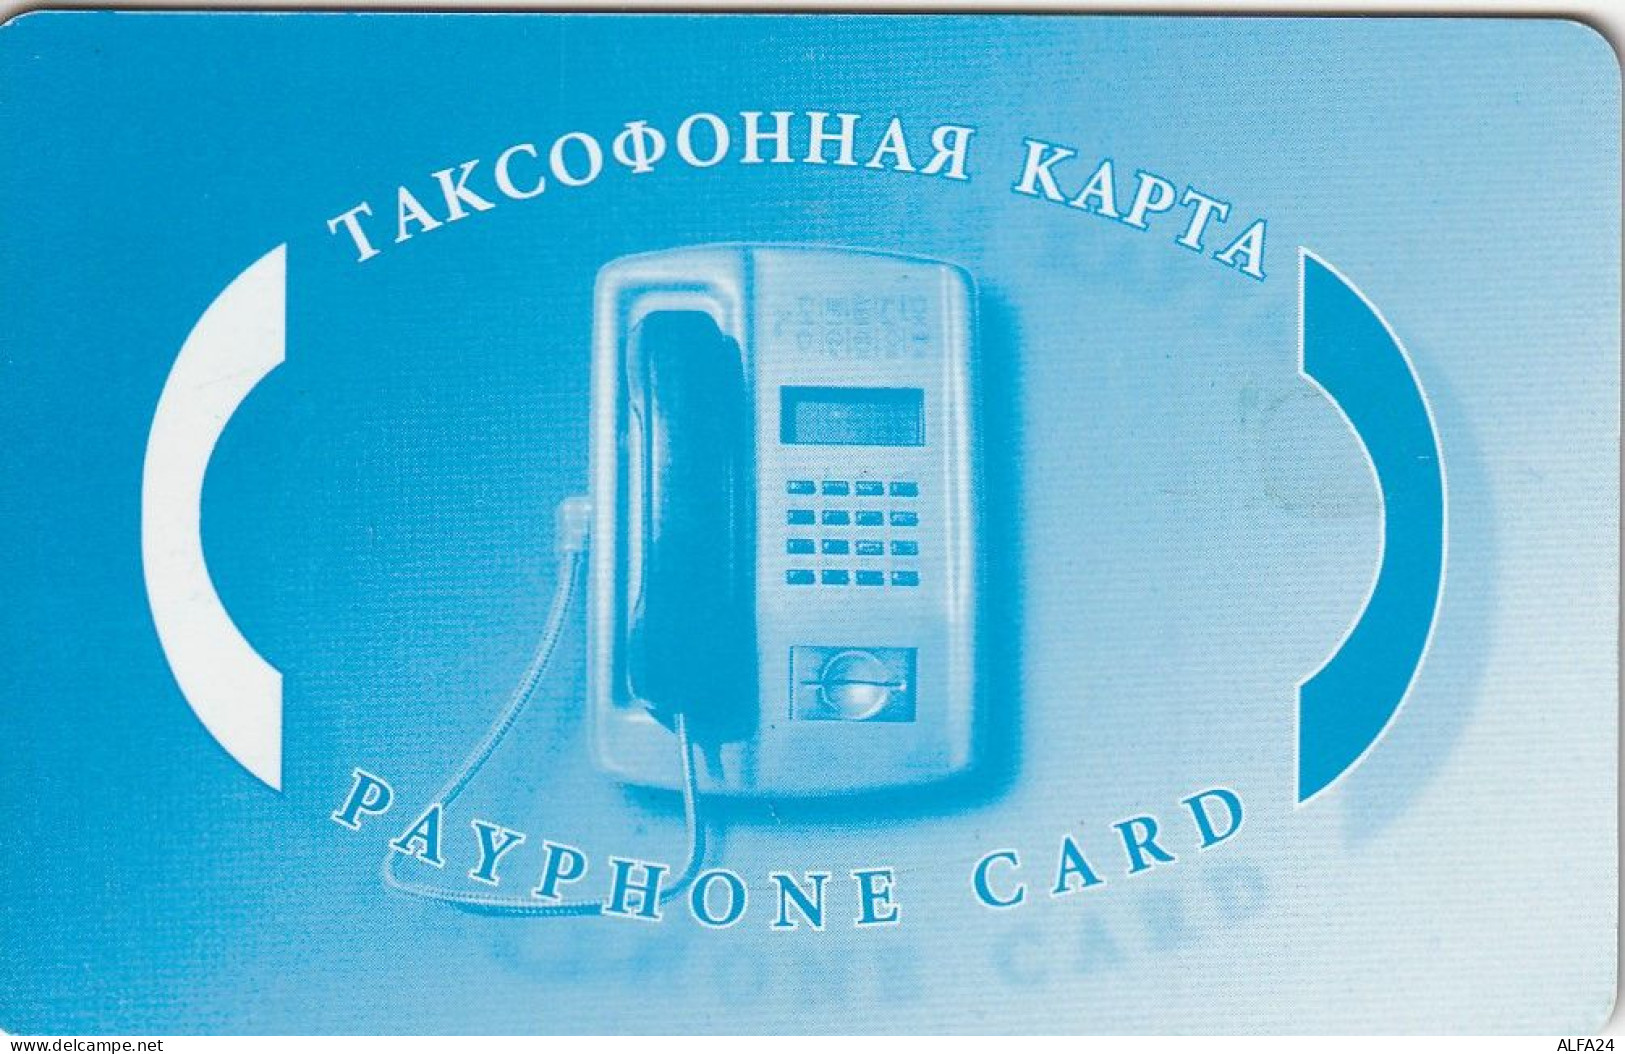 PHONE CARD RUSSIA CentrTelecom And Moscow Region (E49.23.2 - Russia